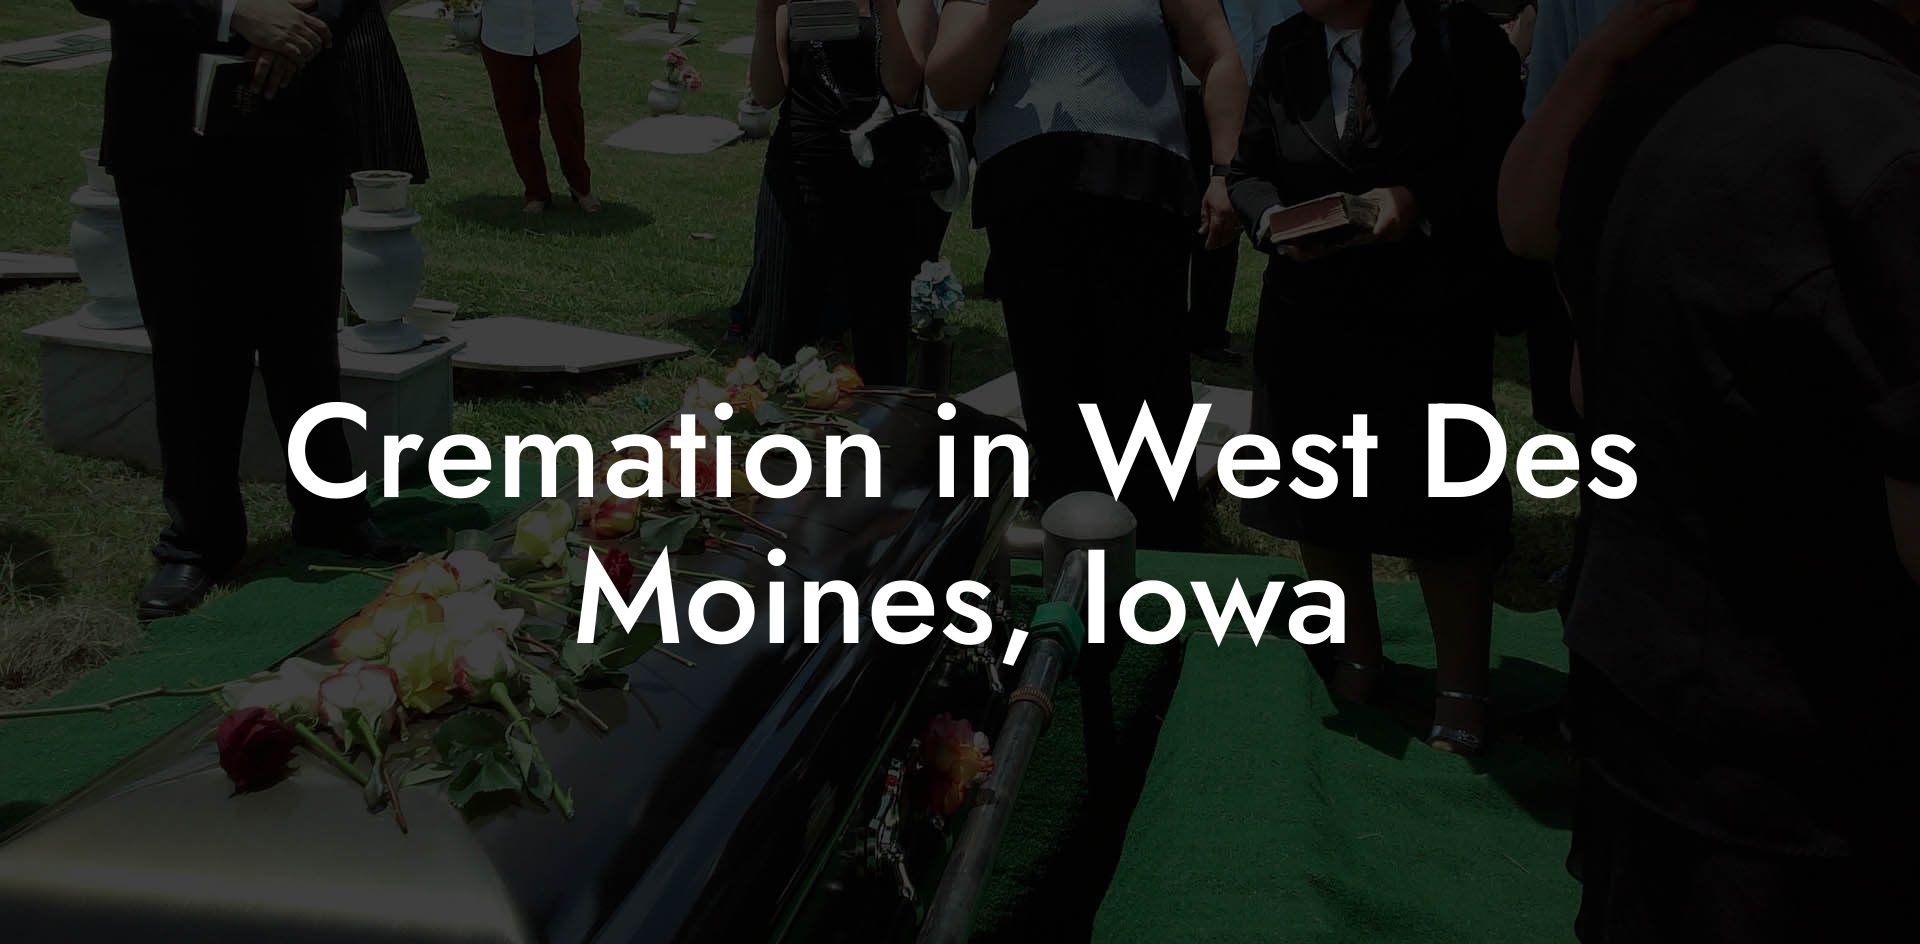 Cremation in West Des Moines, Iowa